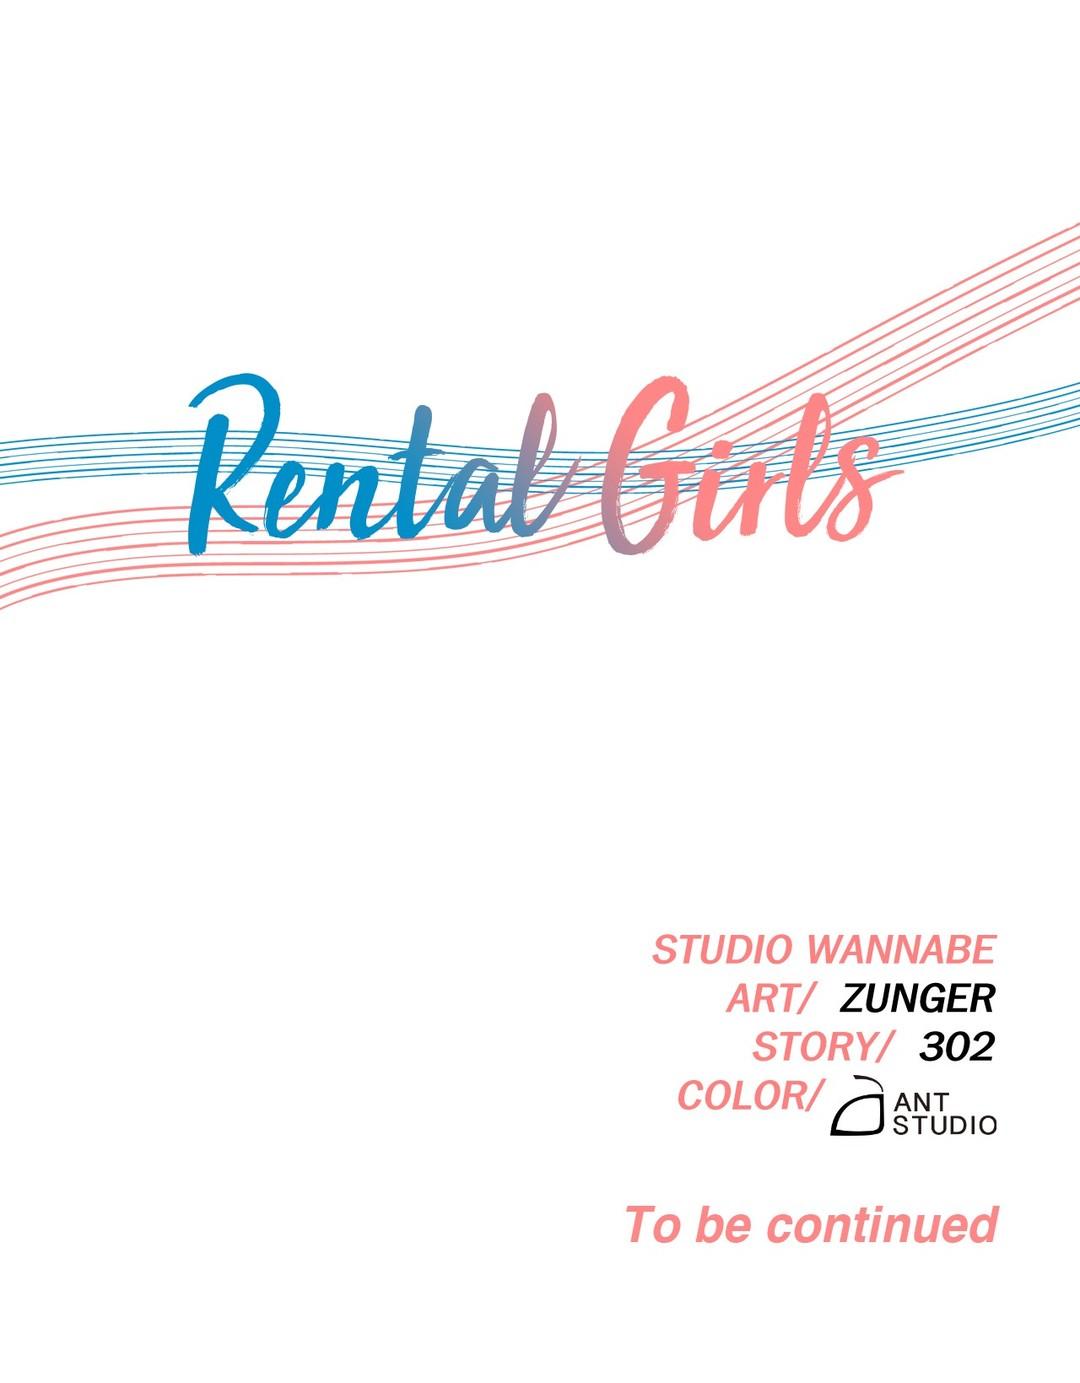 Rental Girls Ch 20 - 24 30